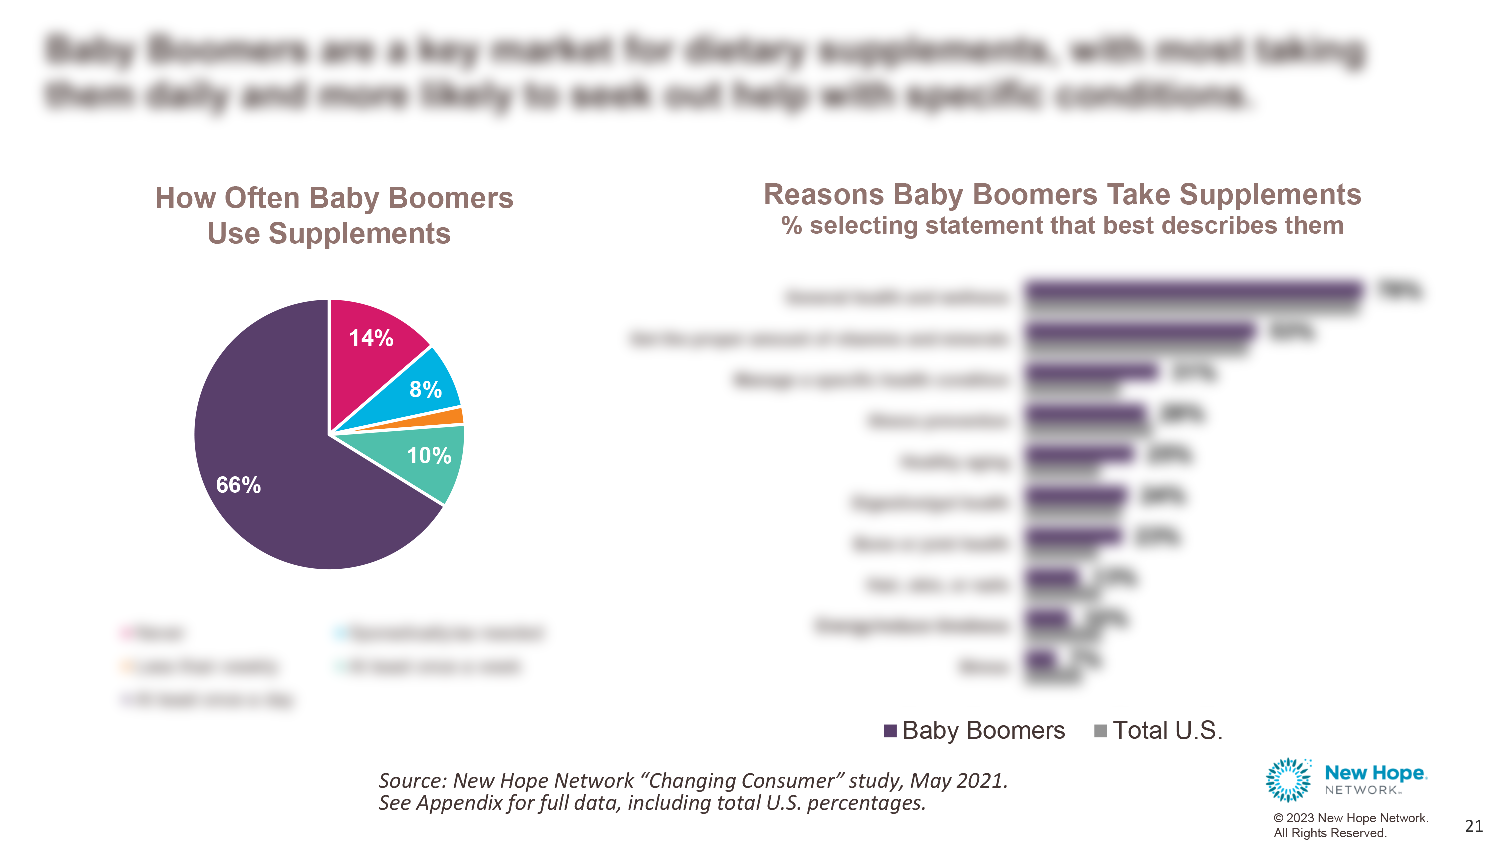 Consumer Snapshot Report: Baby Boomer